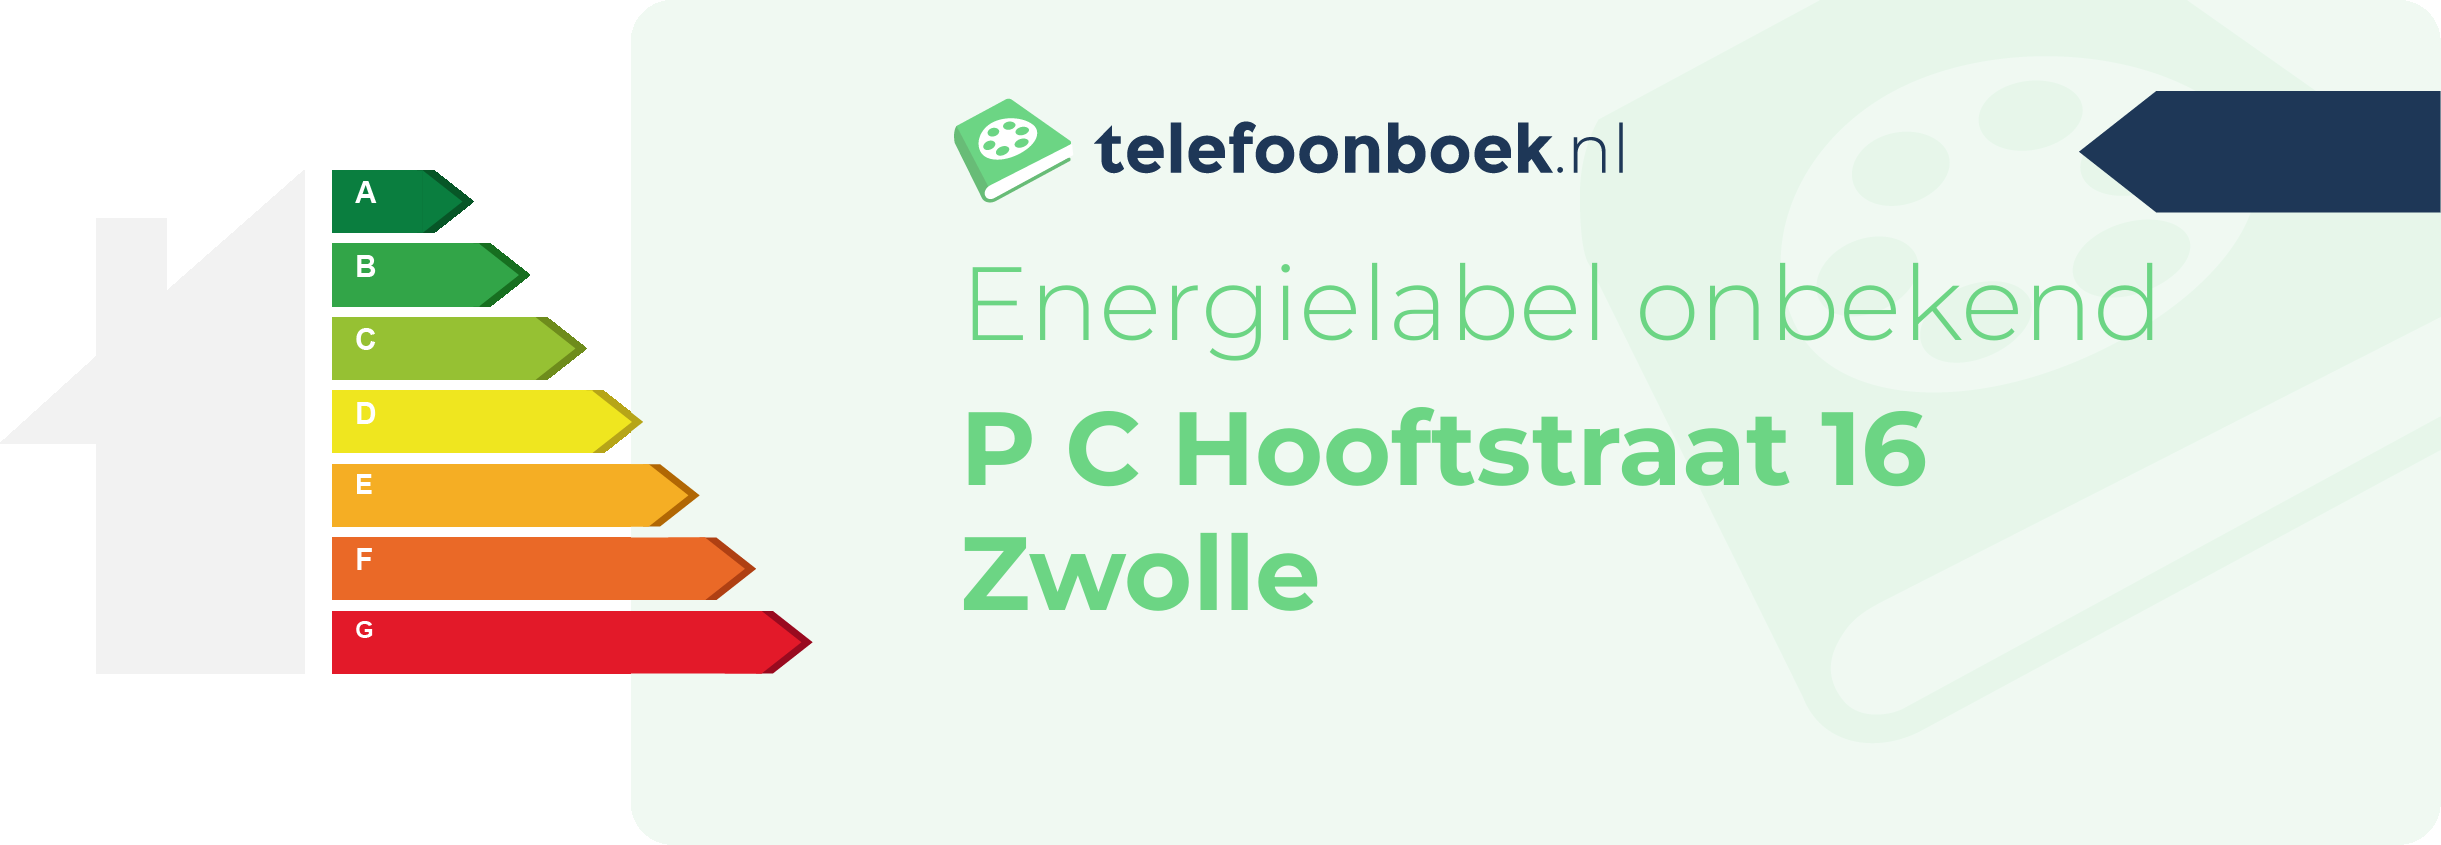 Energielabel P C Hooftstraat 16 Zwolle